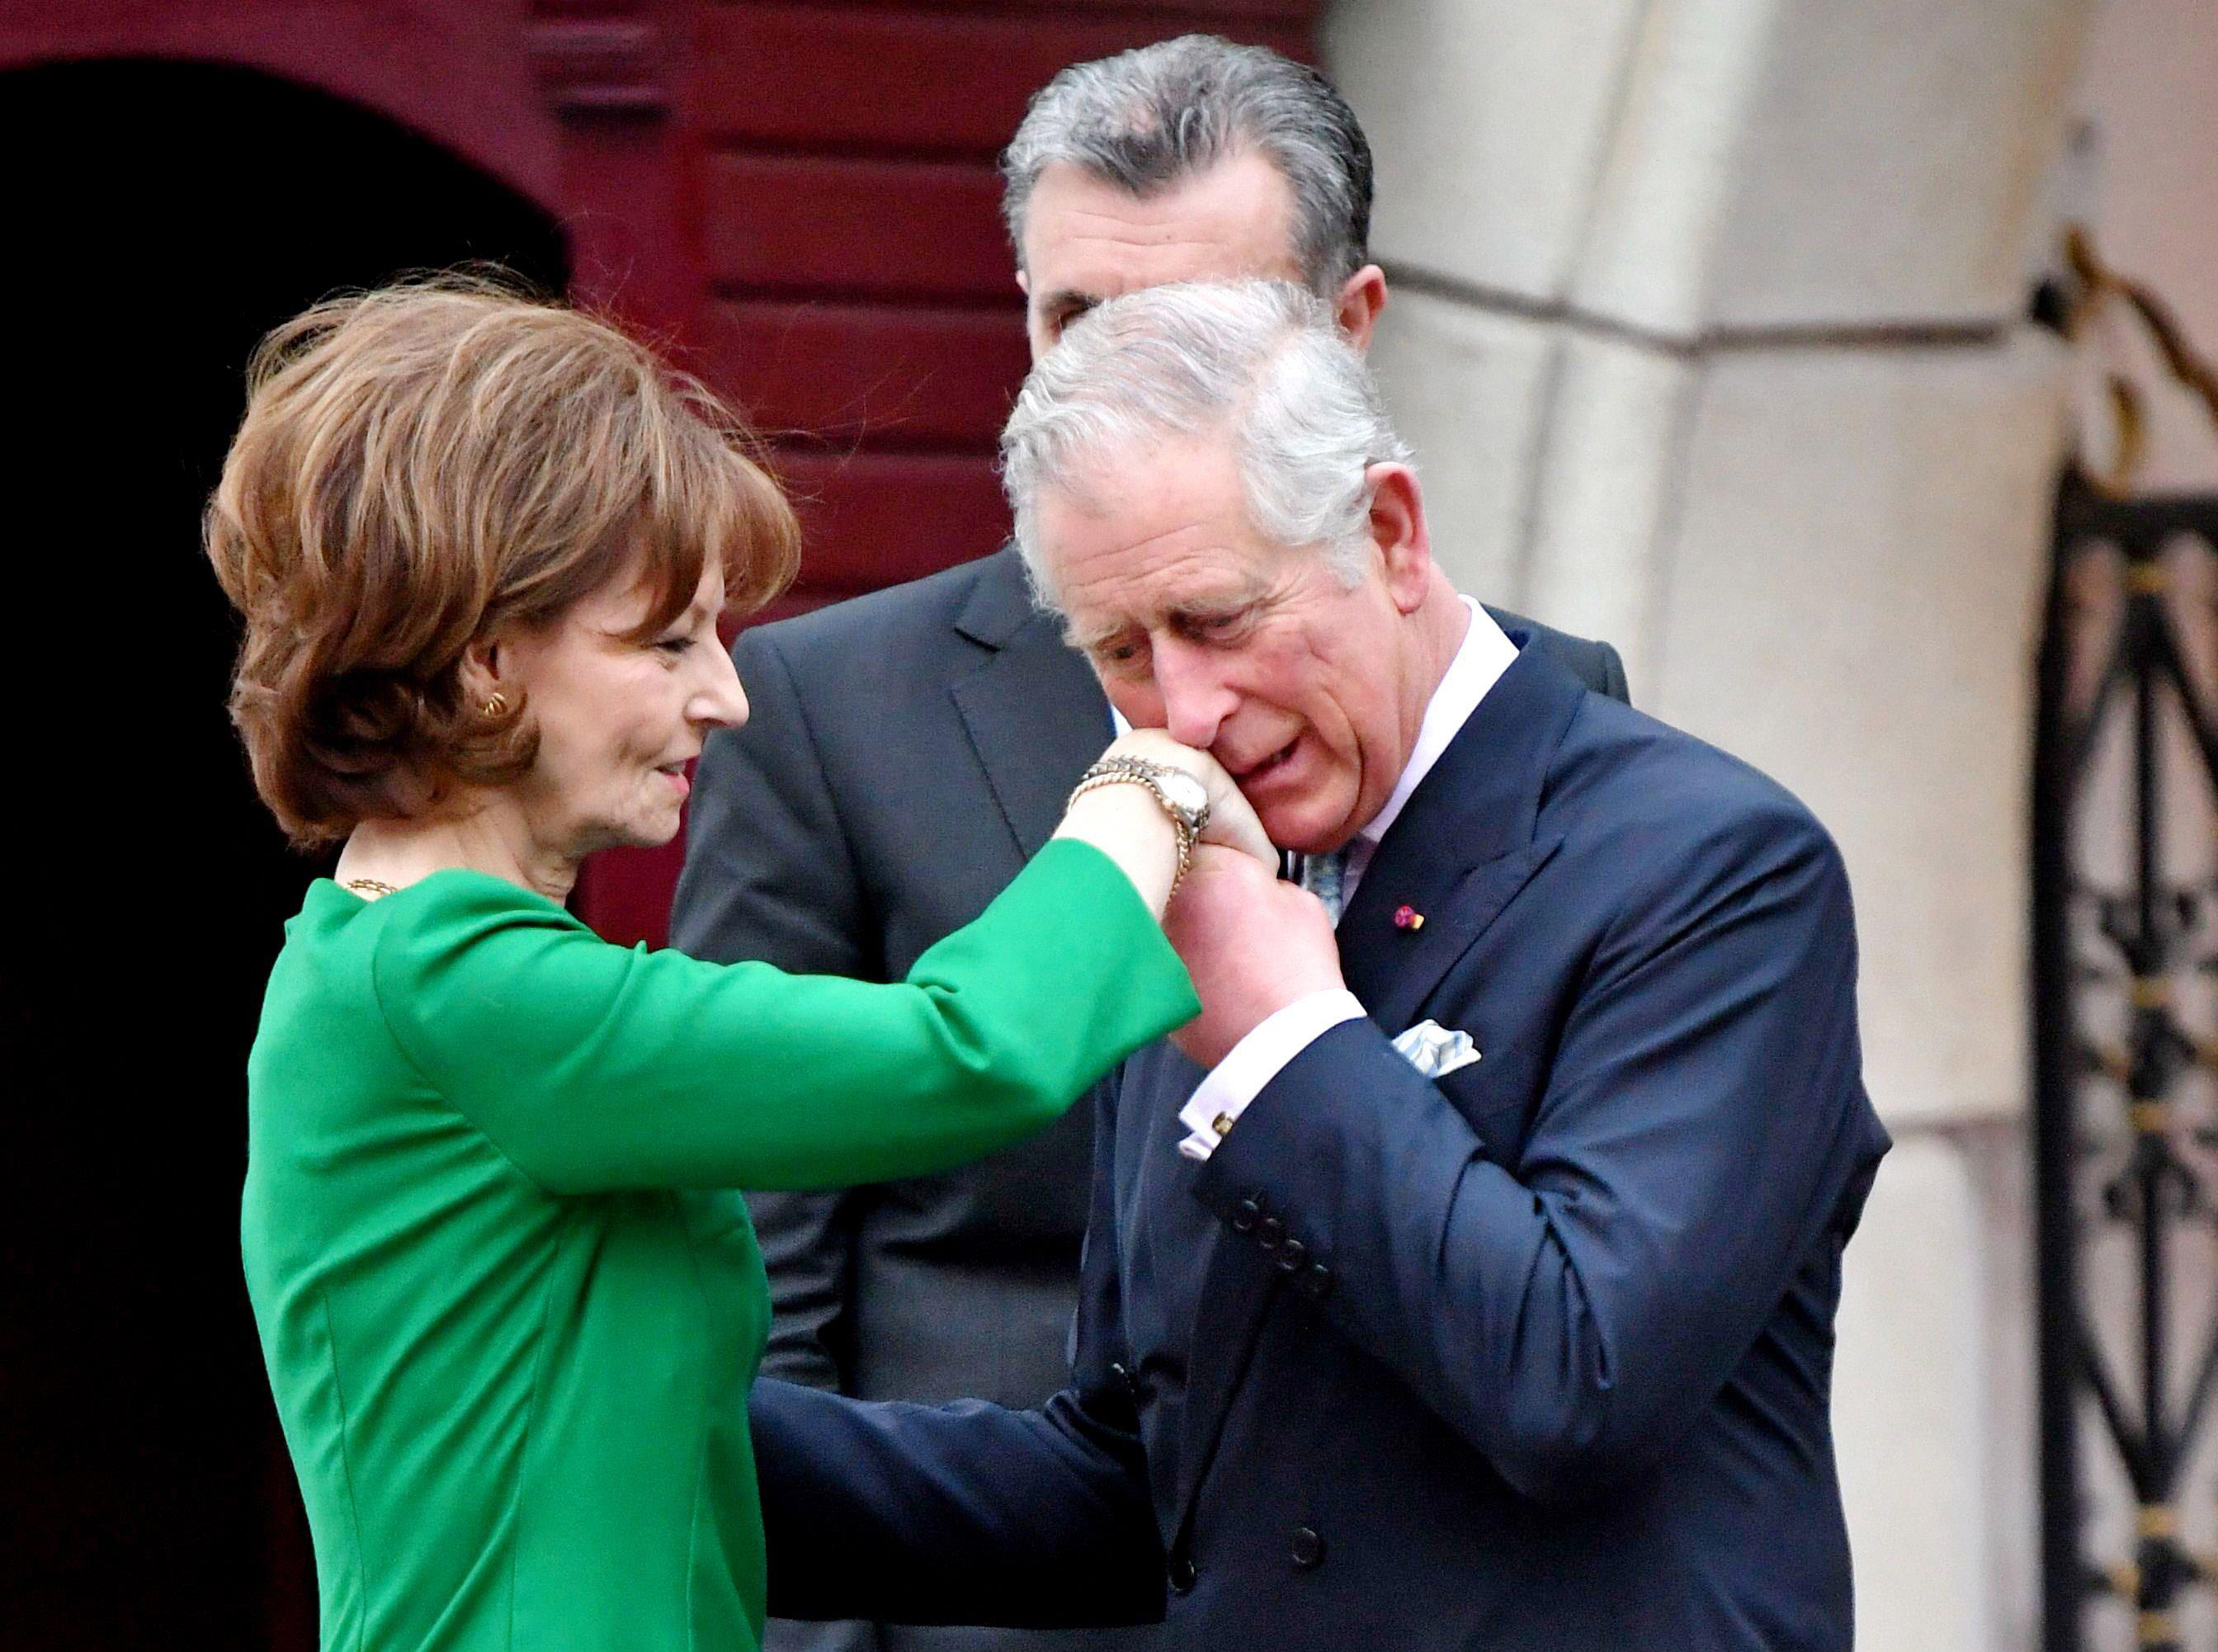 Regele Charles al III-lea, încoronat azi la Londra. Ceremonia istorică va fi transmisă într-o ediţie specială Observator, pe Antena 1